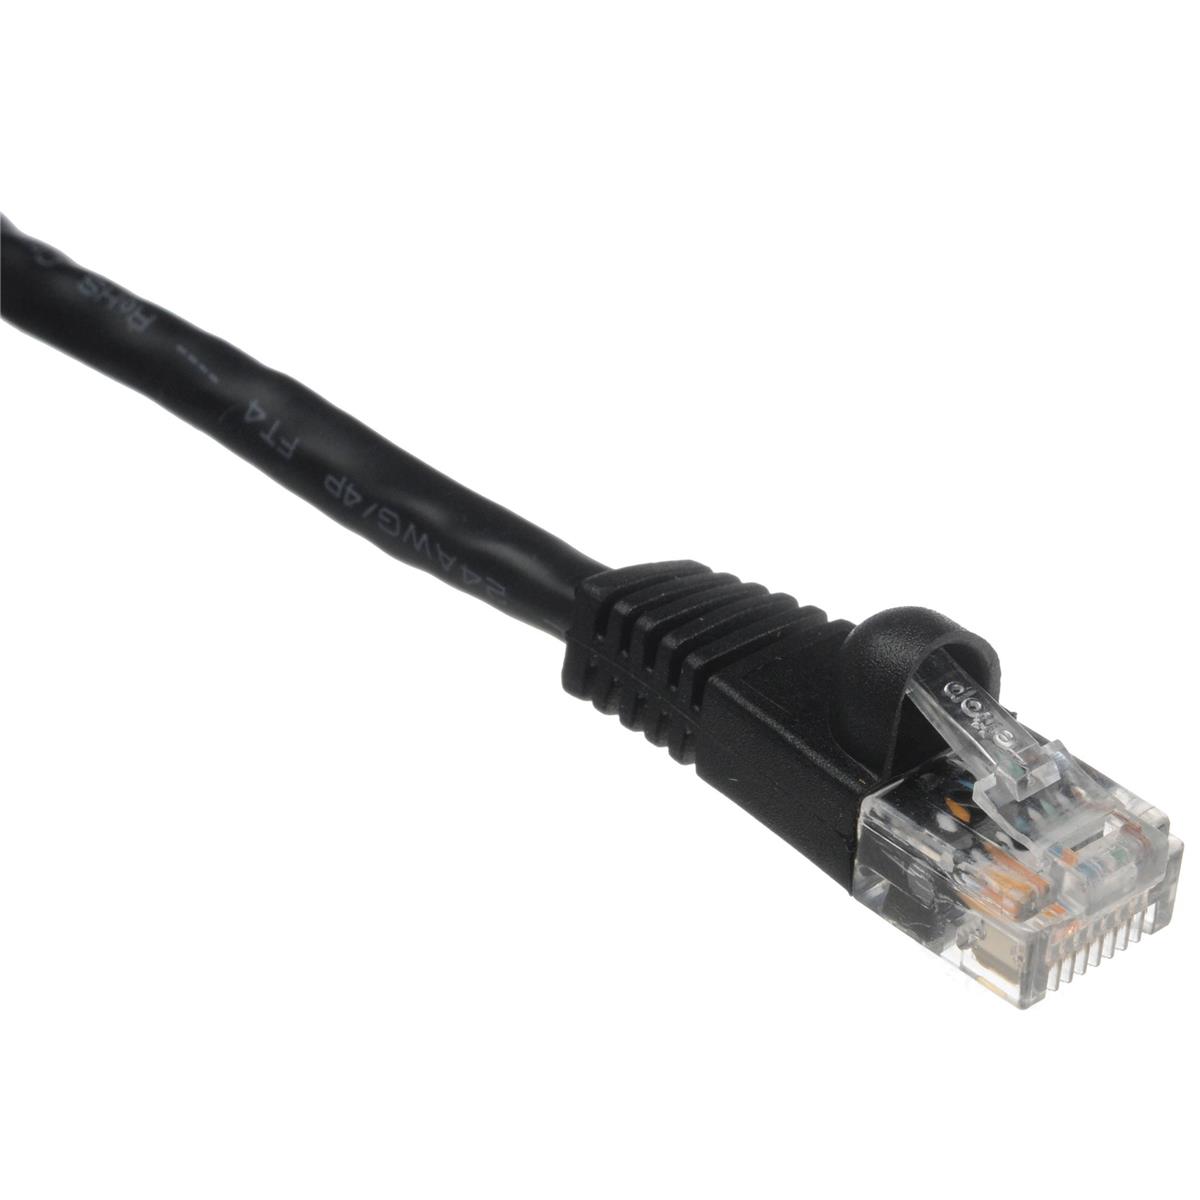 Комплексный 10-футовый патч-кабель Cat5e 350 МГц, черный #CAT5-350-10BLK